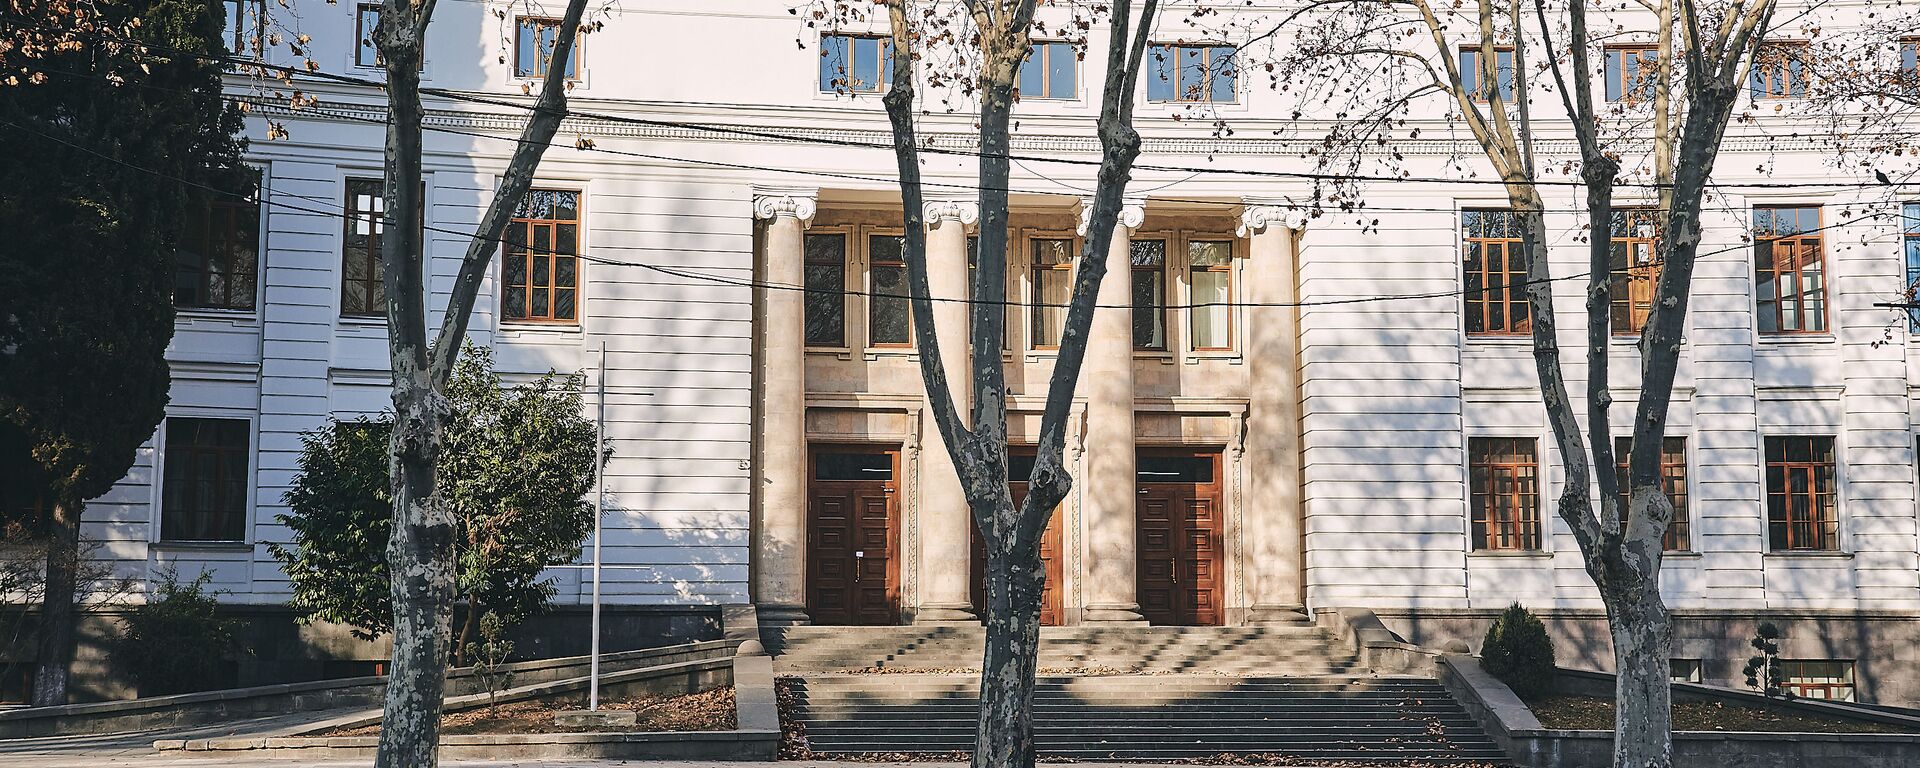 Тбилисский государственный университет - Sputnik Грузия, 1920, 26.02.2021